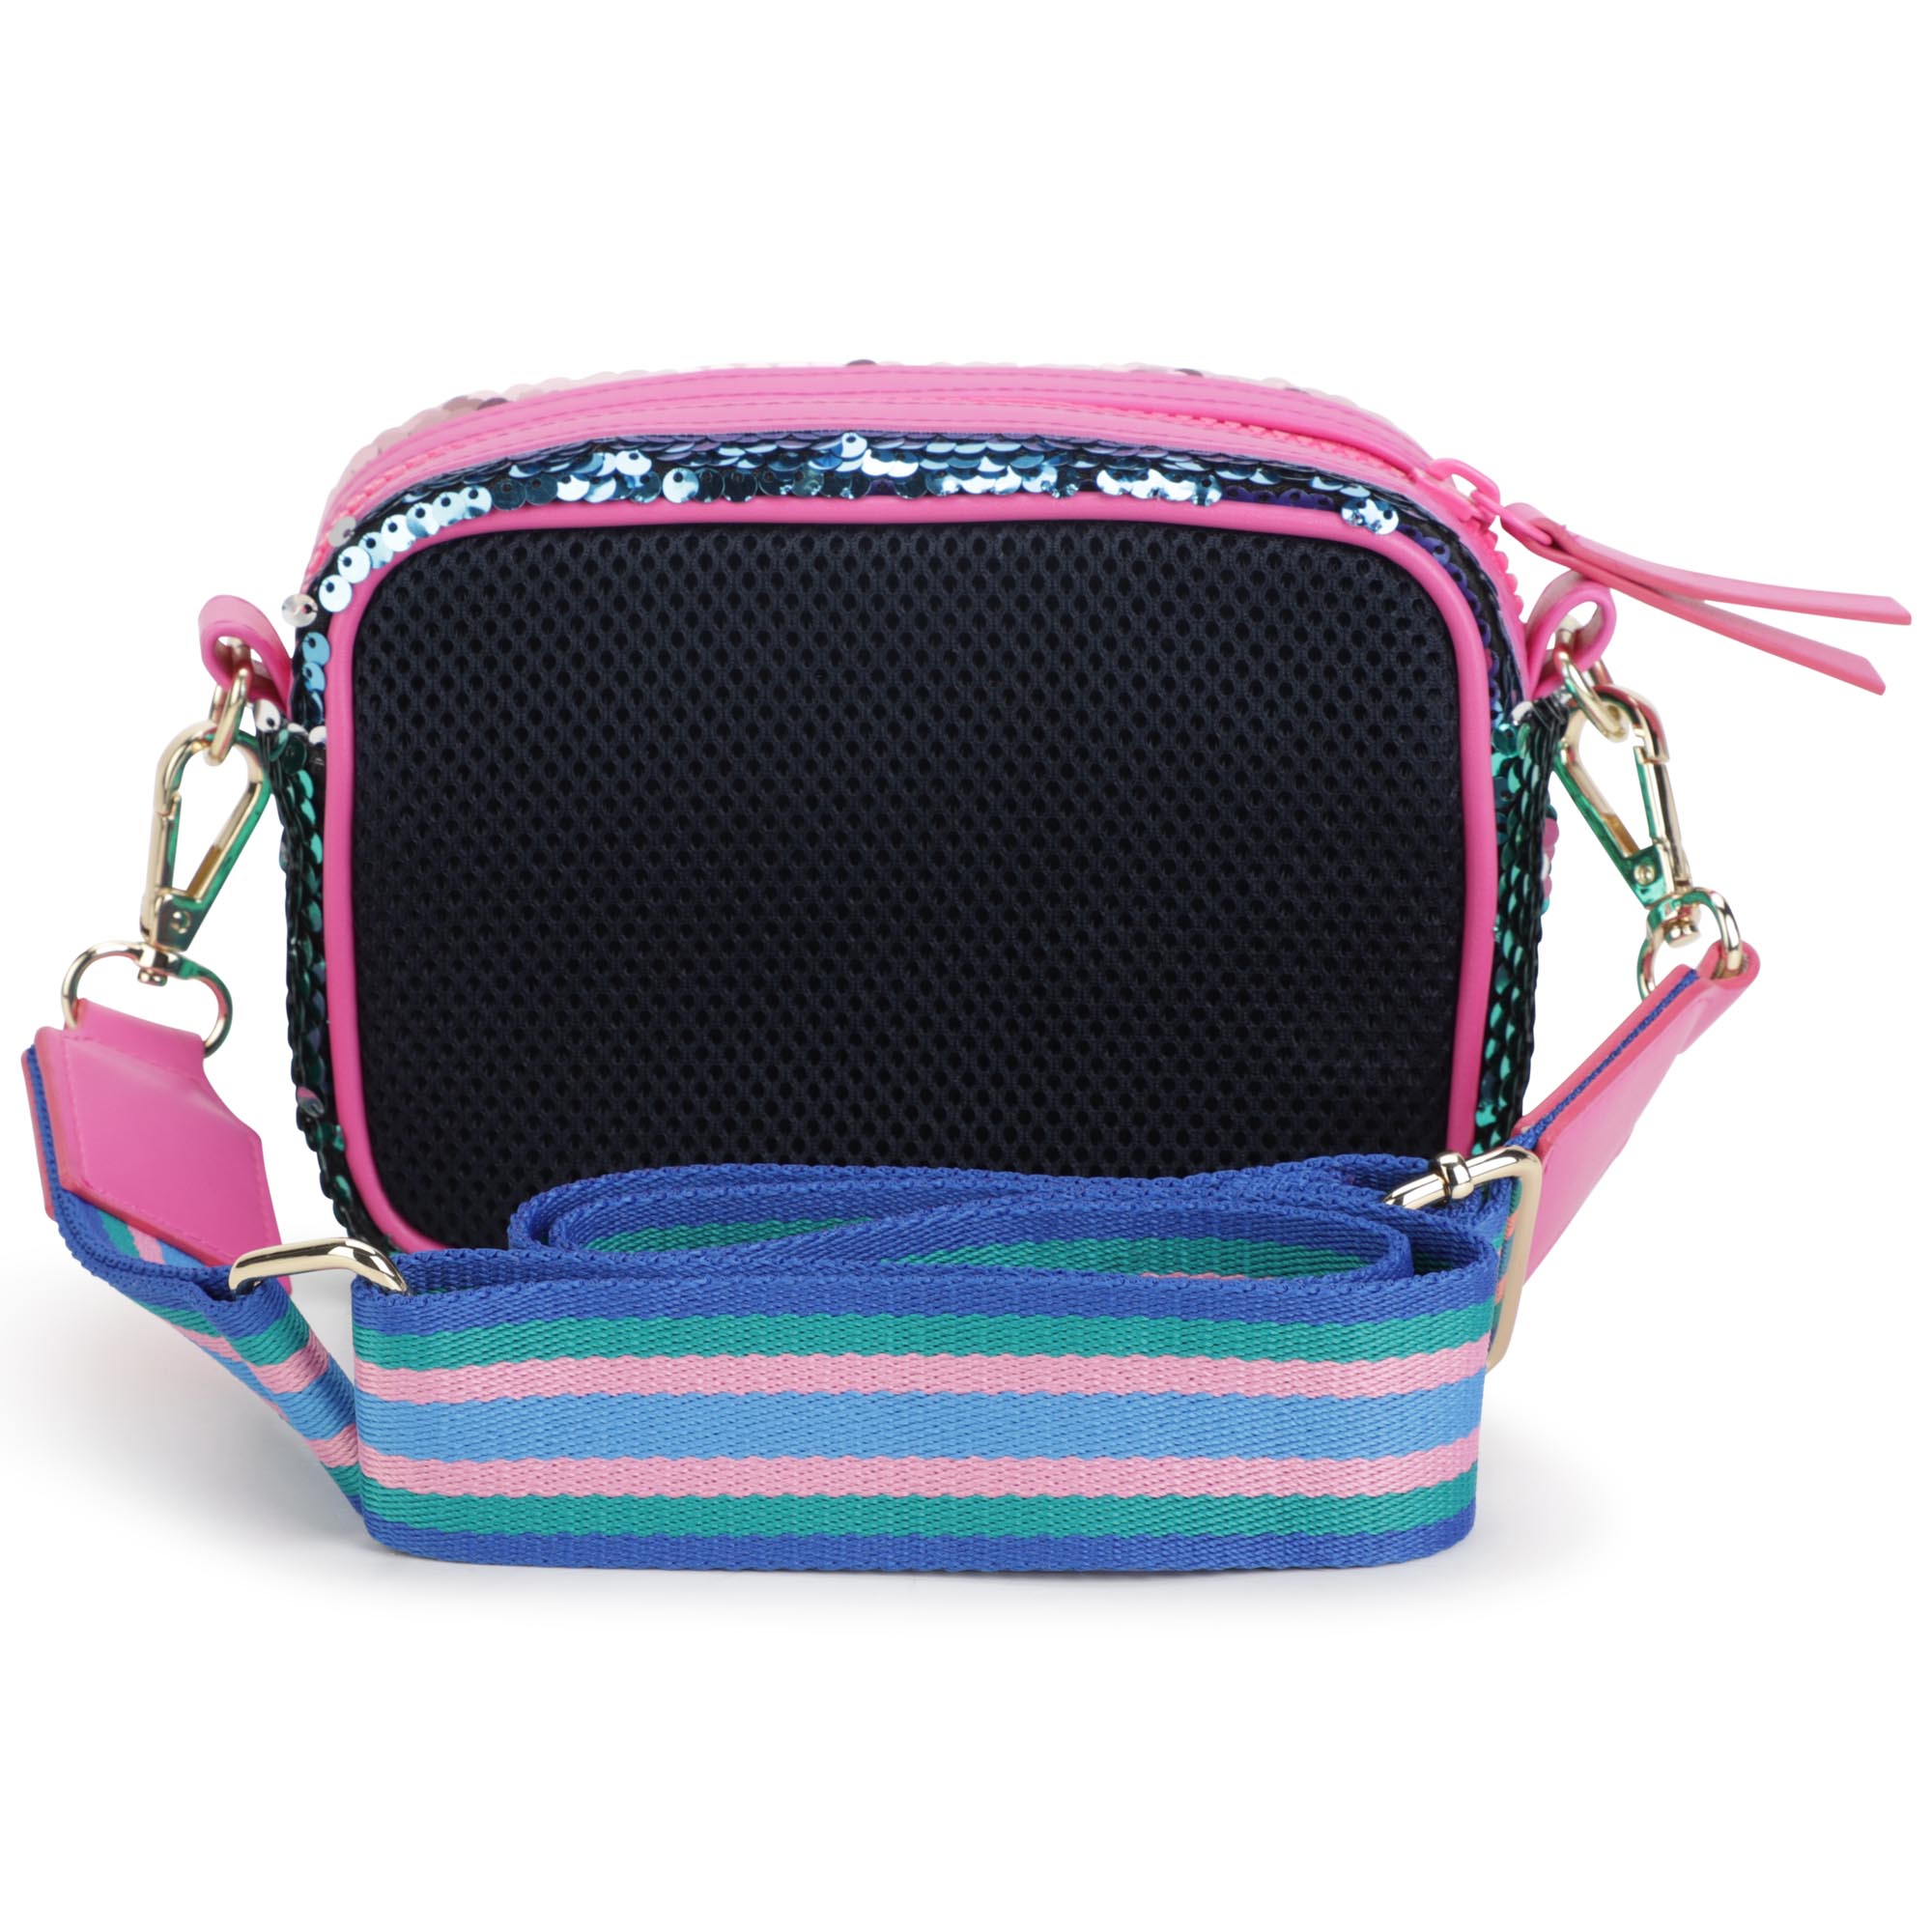 Sequined zip-up handbag MARC JACOBS for GIRL